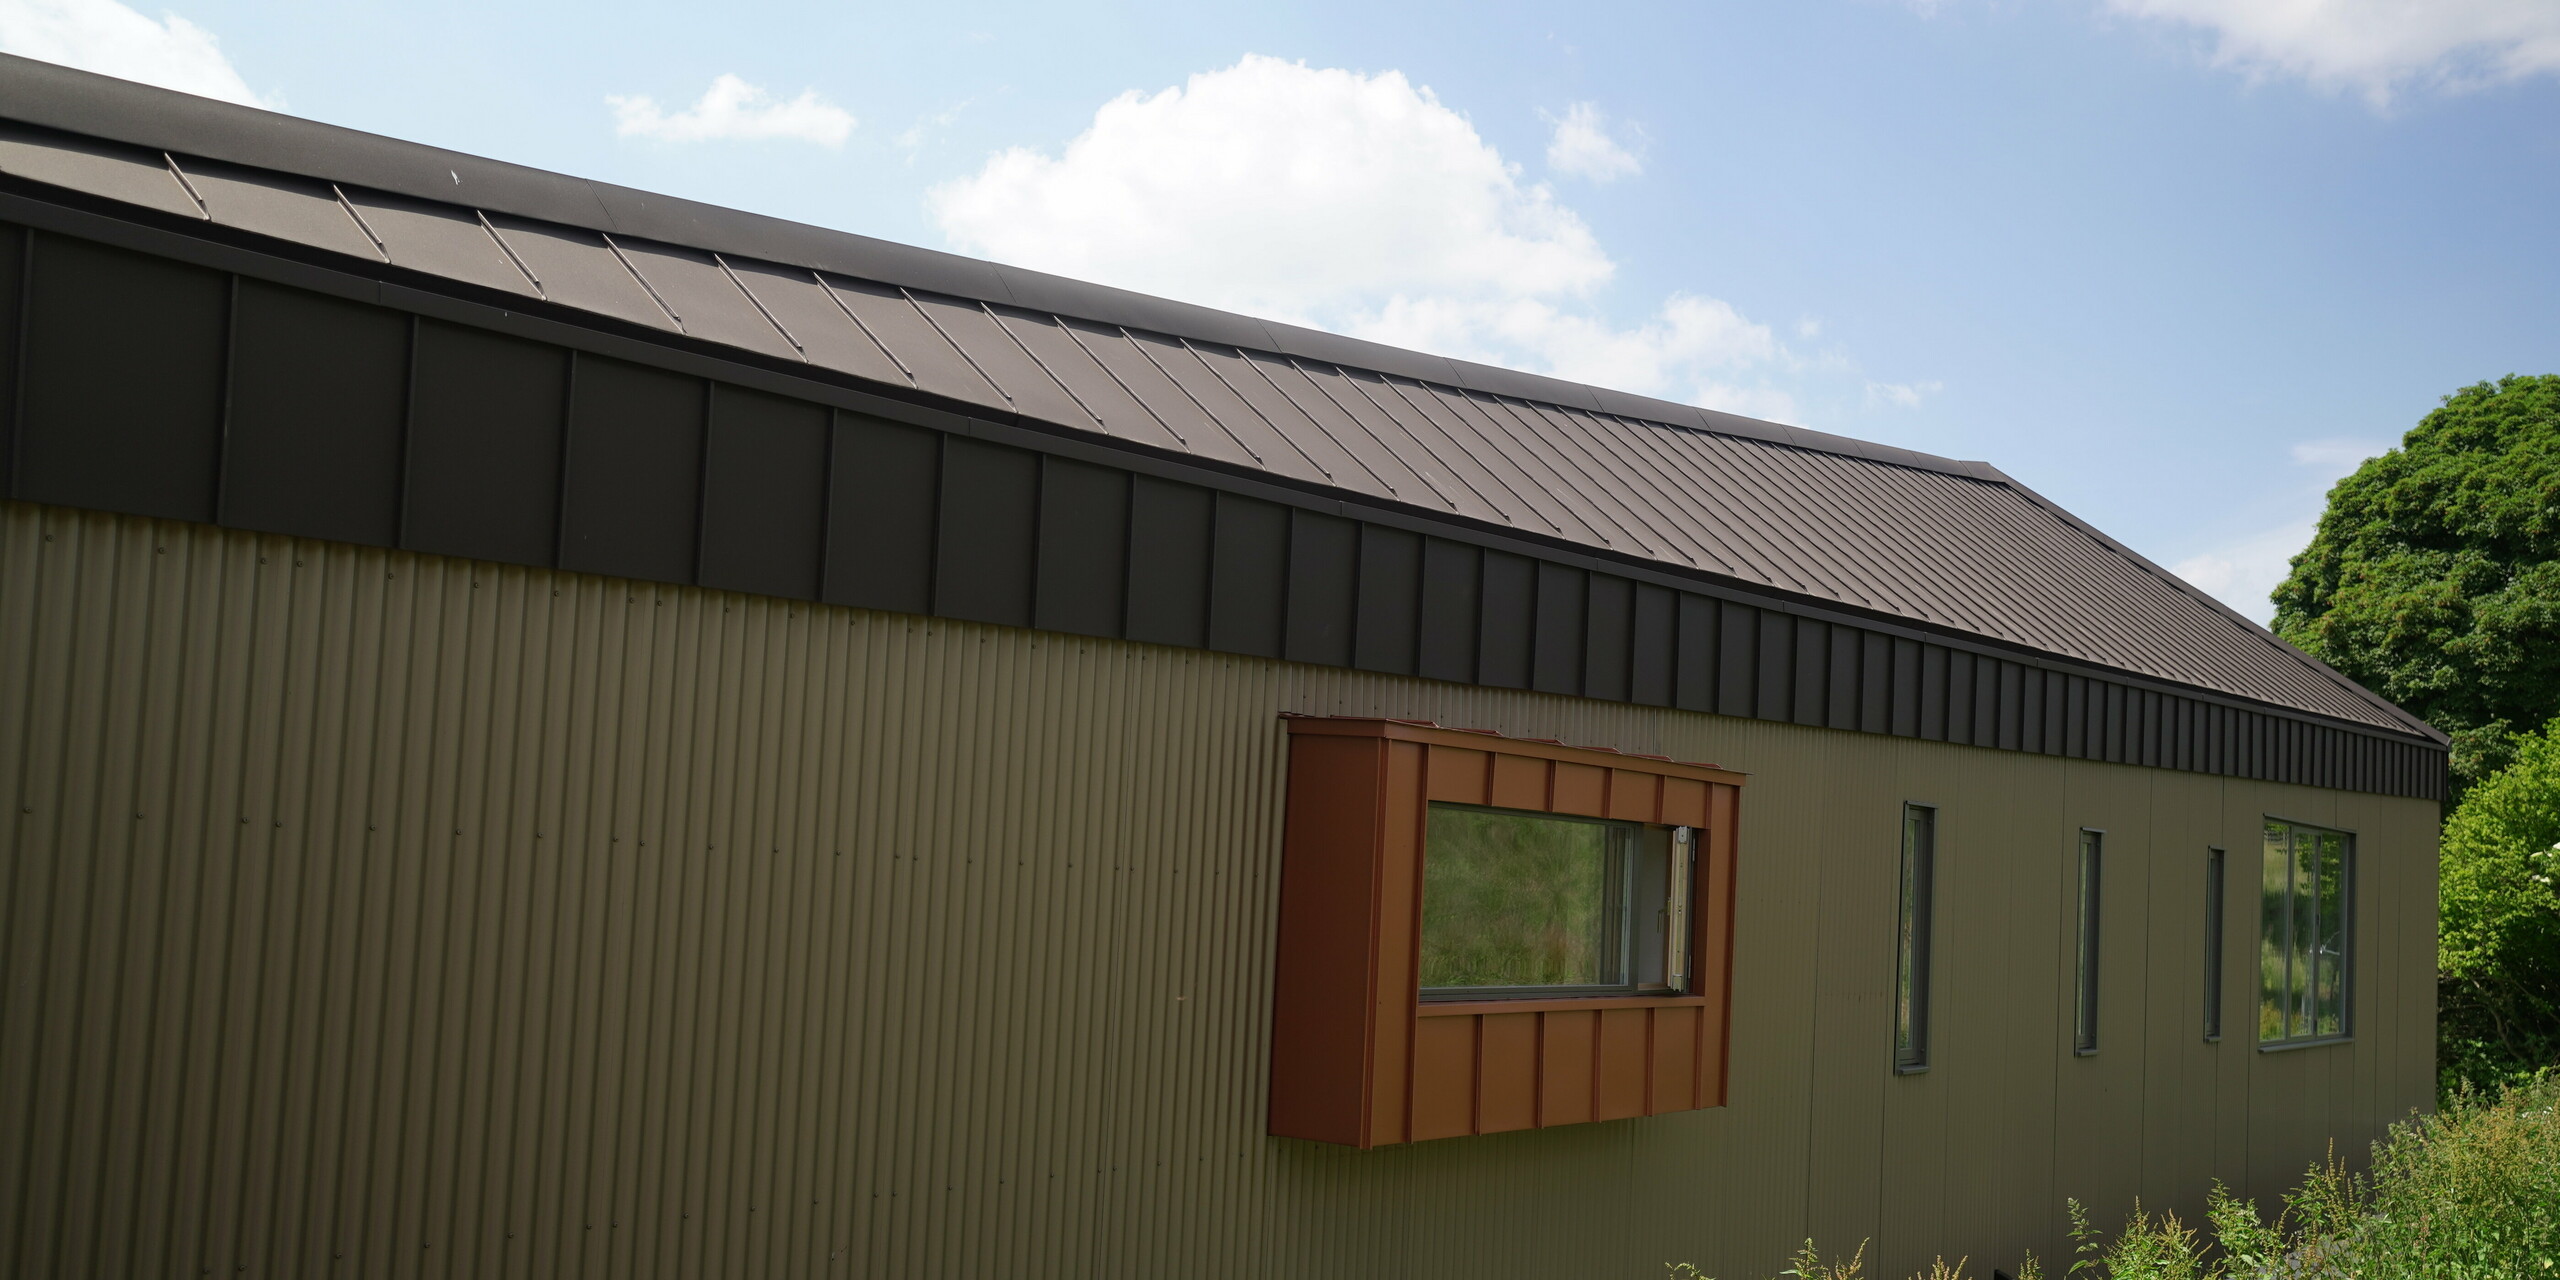 Langhaus mit Aluminium-Dach aus PREFALZ in P.10 Braun und Fensterverkleidung aus Falzonal in der Farbe Neukupfer